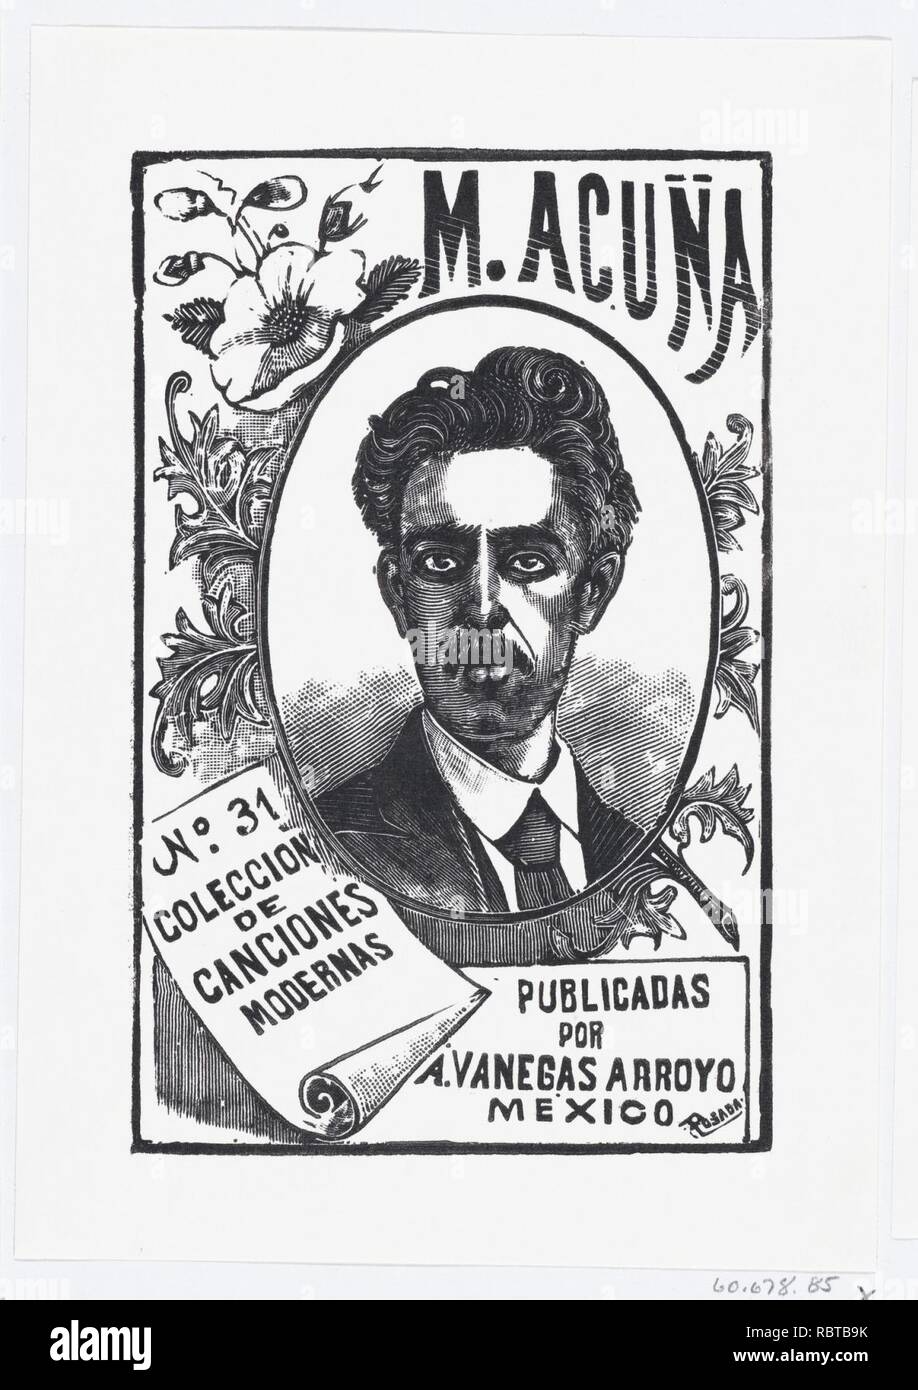 Un ritratto di Manuel Acuña, illustrazione per 'Manuel Acuña", pubblicato da Antonio Vanegas Arroyo Foto Stock